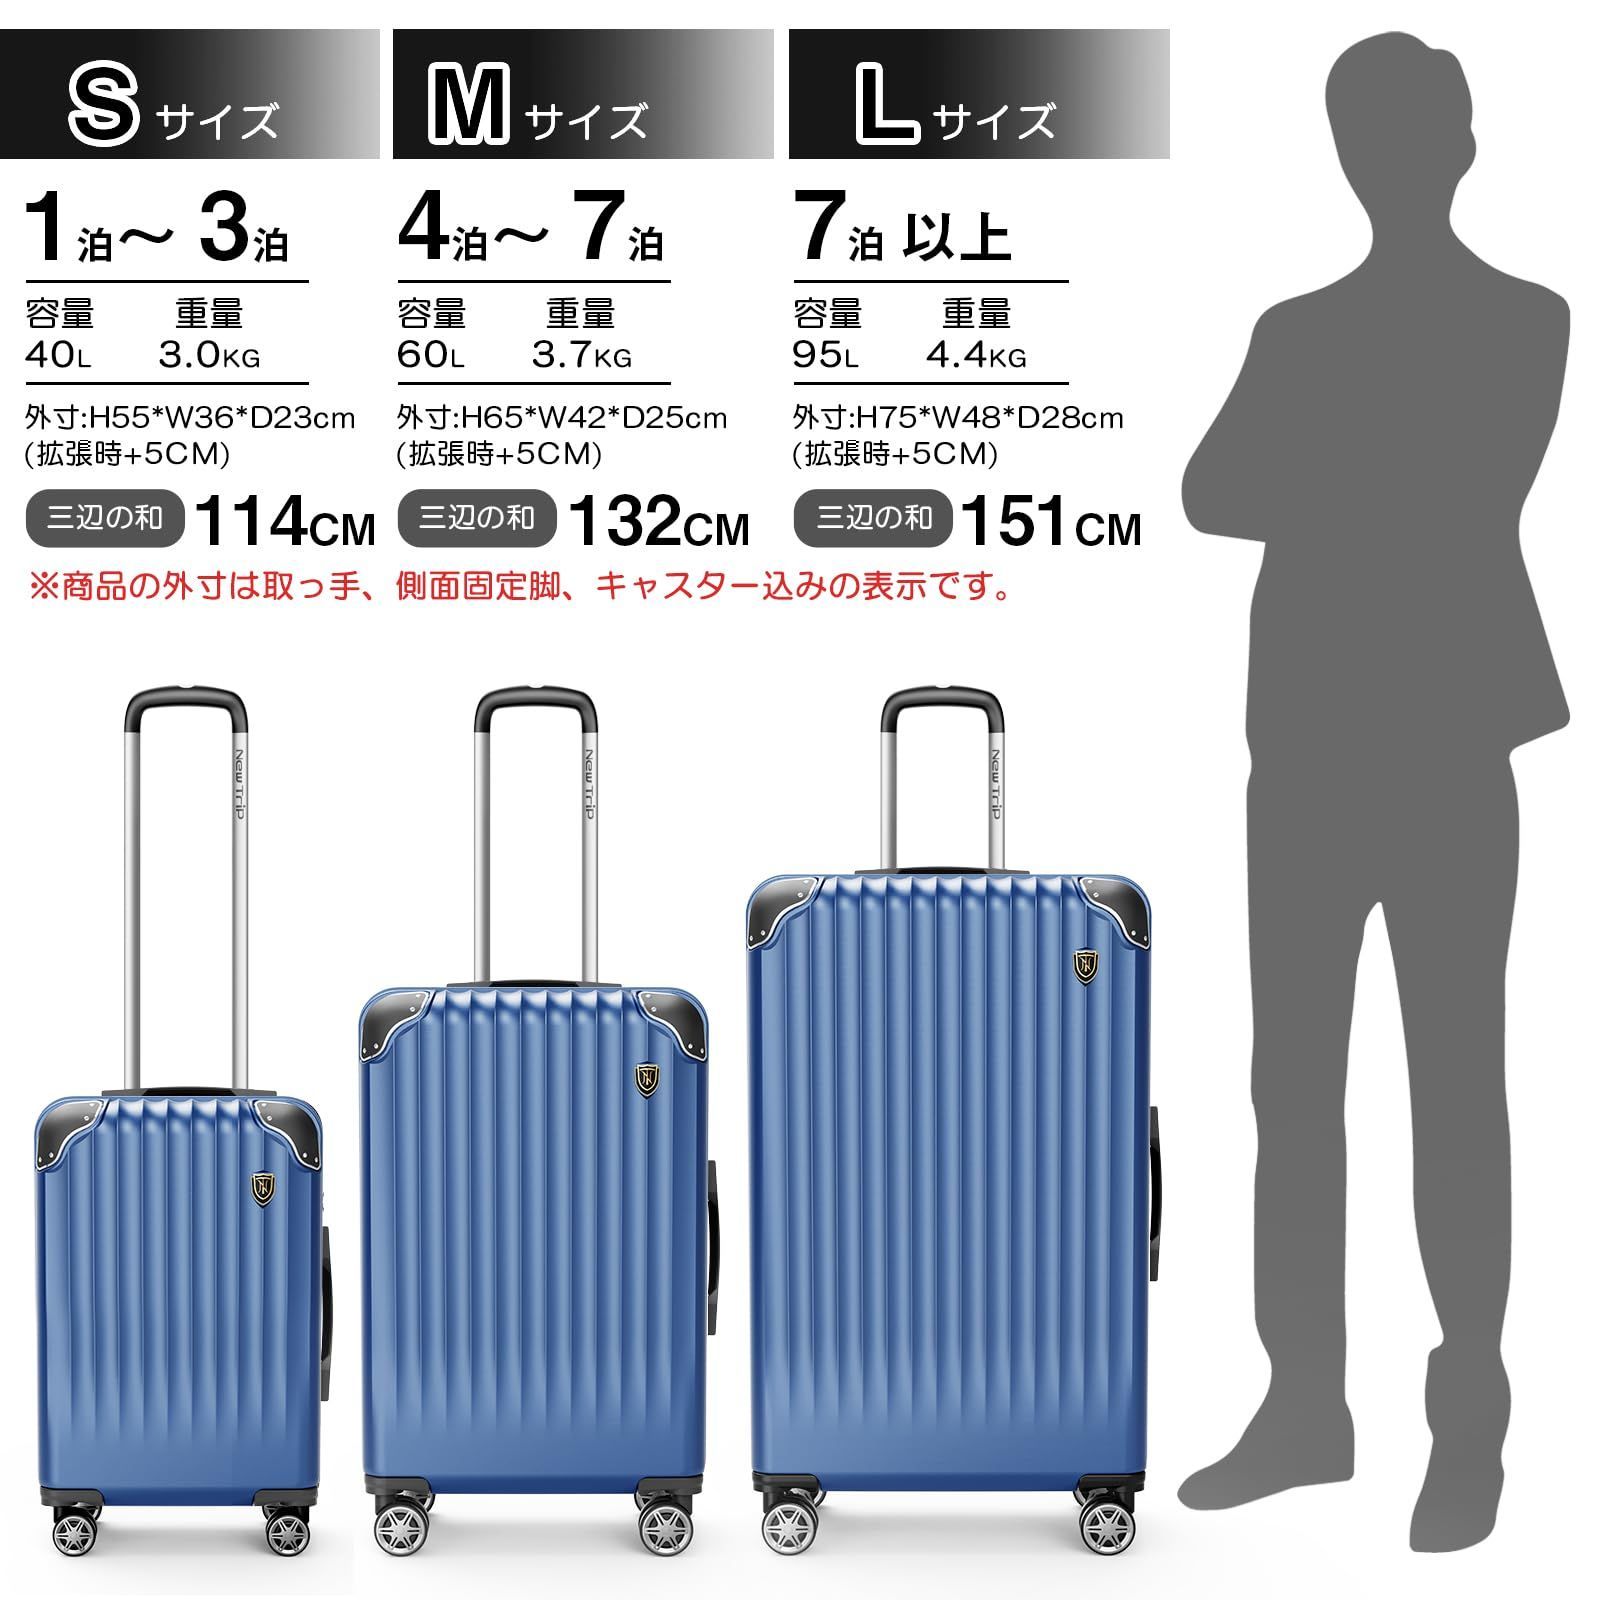 ニュートリップ スーツケース Mサイズ ブルー - バッグ